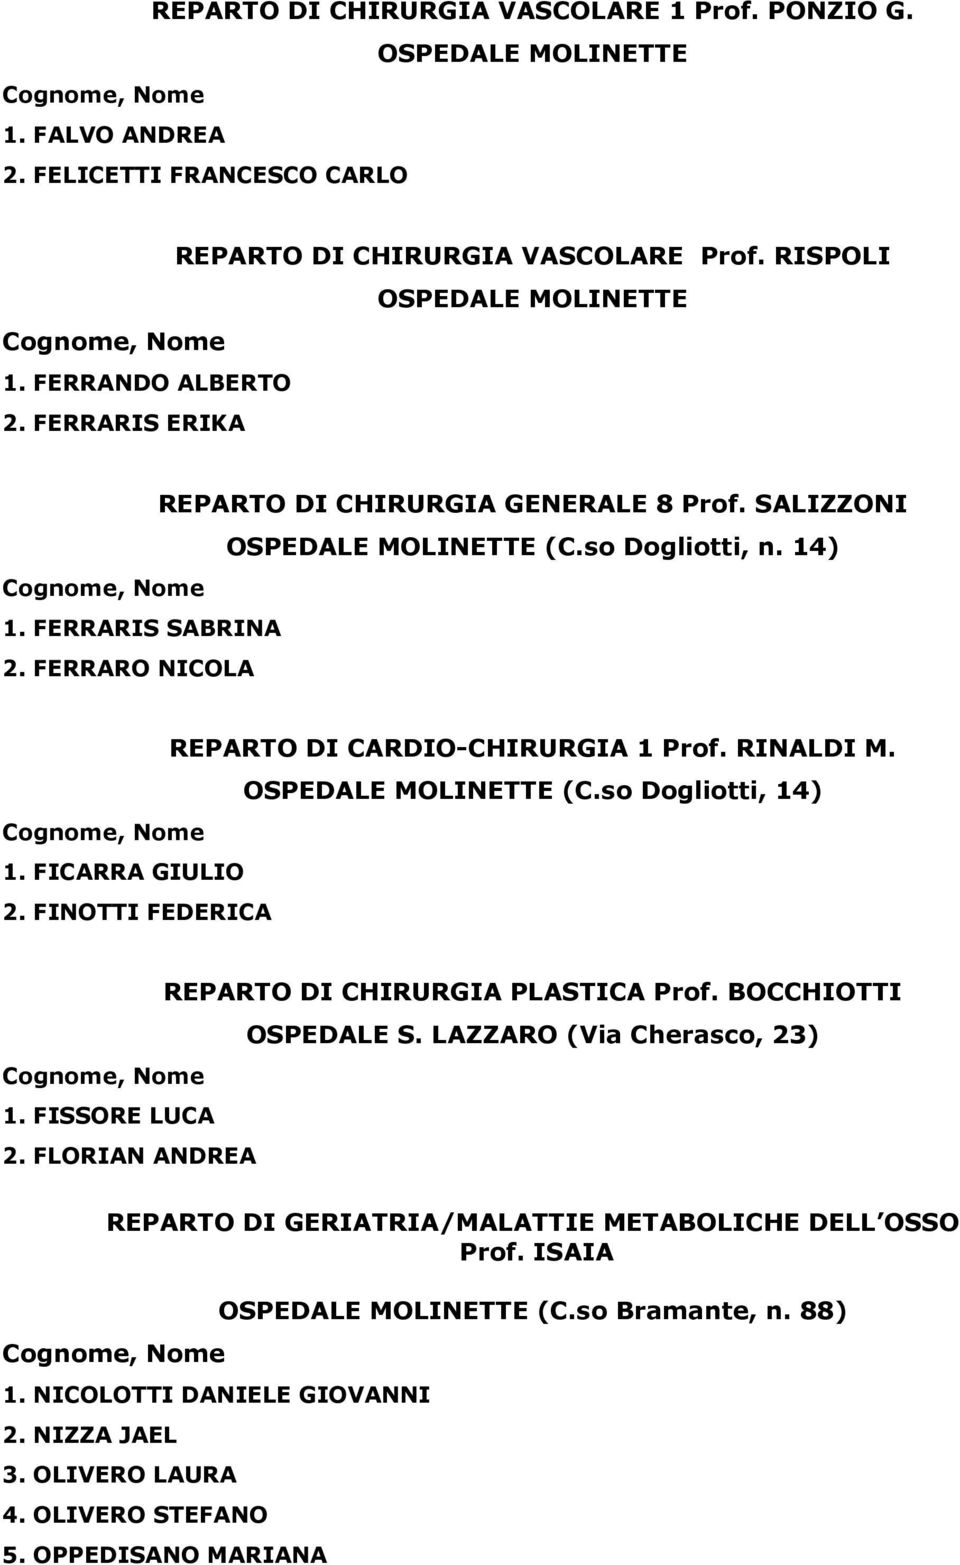 OSPEDALE MOLINETTE (C.so Dogliotti, 14) 1. FICARRA GIULIO 2. FINOTTI FEDERICA 1. FISSORE LUCA 2. FLORIAN ANDREA REPARTO DI CHIRURGIA PLASTICA Prof. BOCCHIOTTI OSPEDALE S.